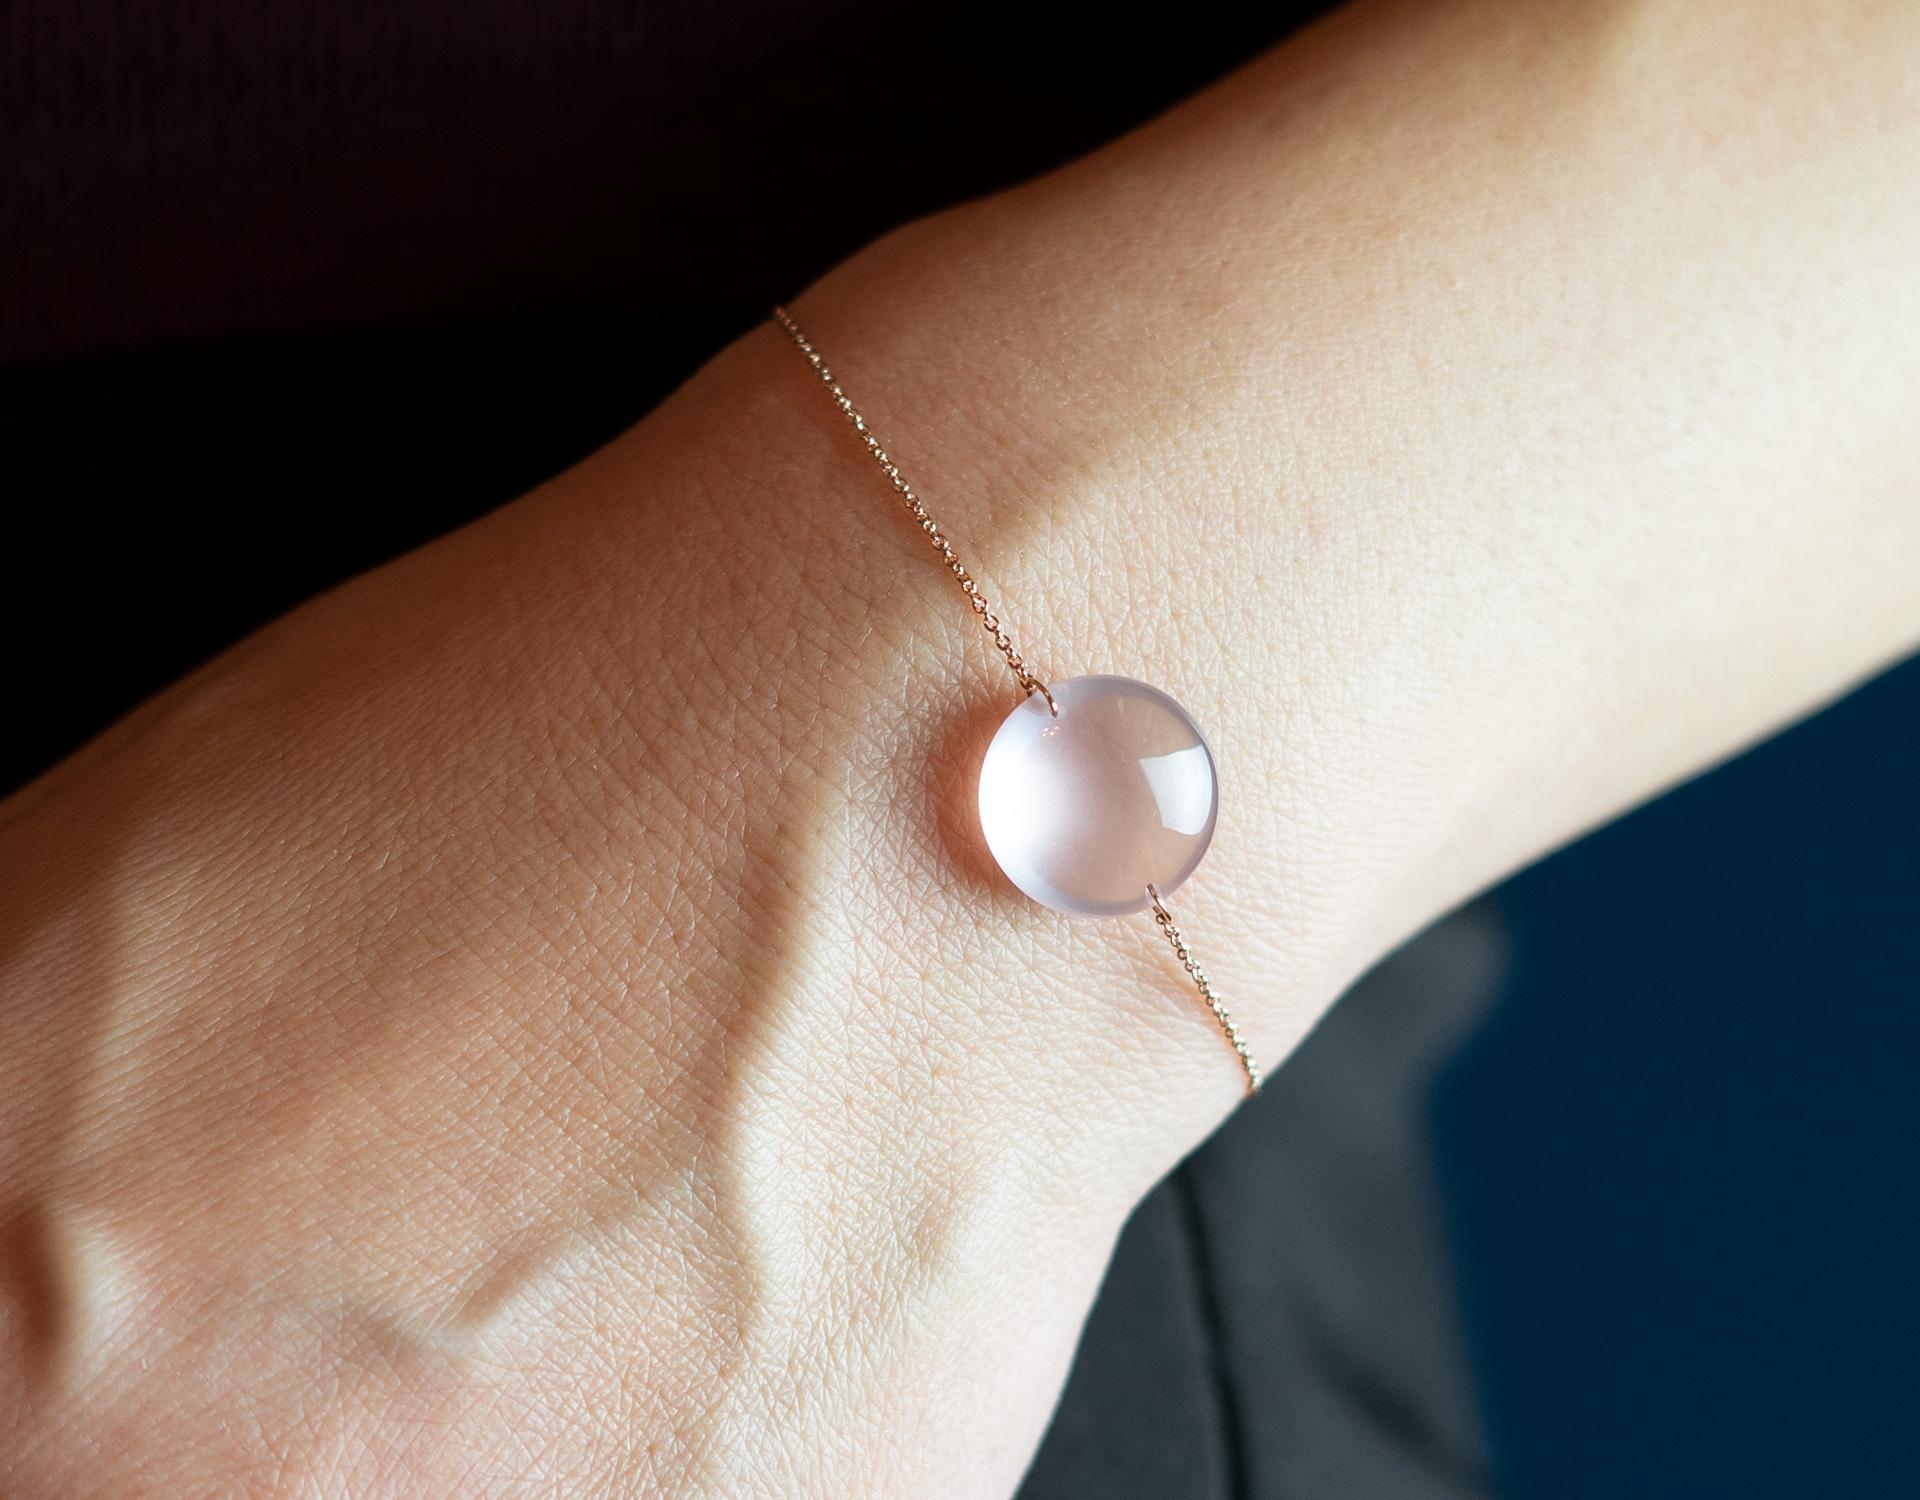 Rebecca Li entwirft Achtsamkeit. 

Dieses minimalistische, moderne Armband ist aus ihrer Crystal Links Collection. Inspiriert von der heiligen Geometrie, soll sie uns an unsere innere Kraft erinnern. 
Es geschehen Wunder.

Rosenquarz bedeutet Liebe